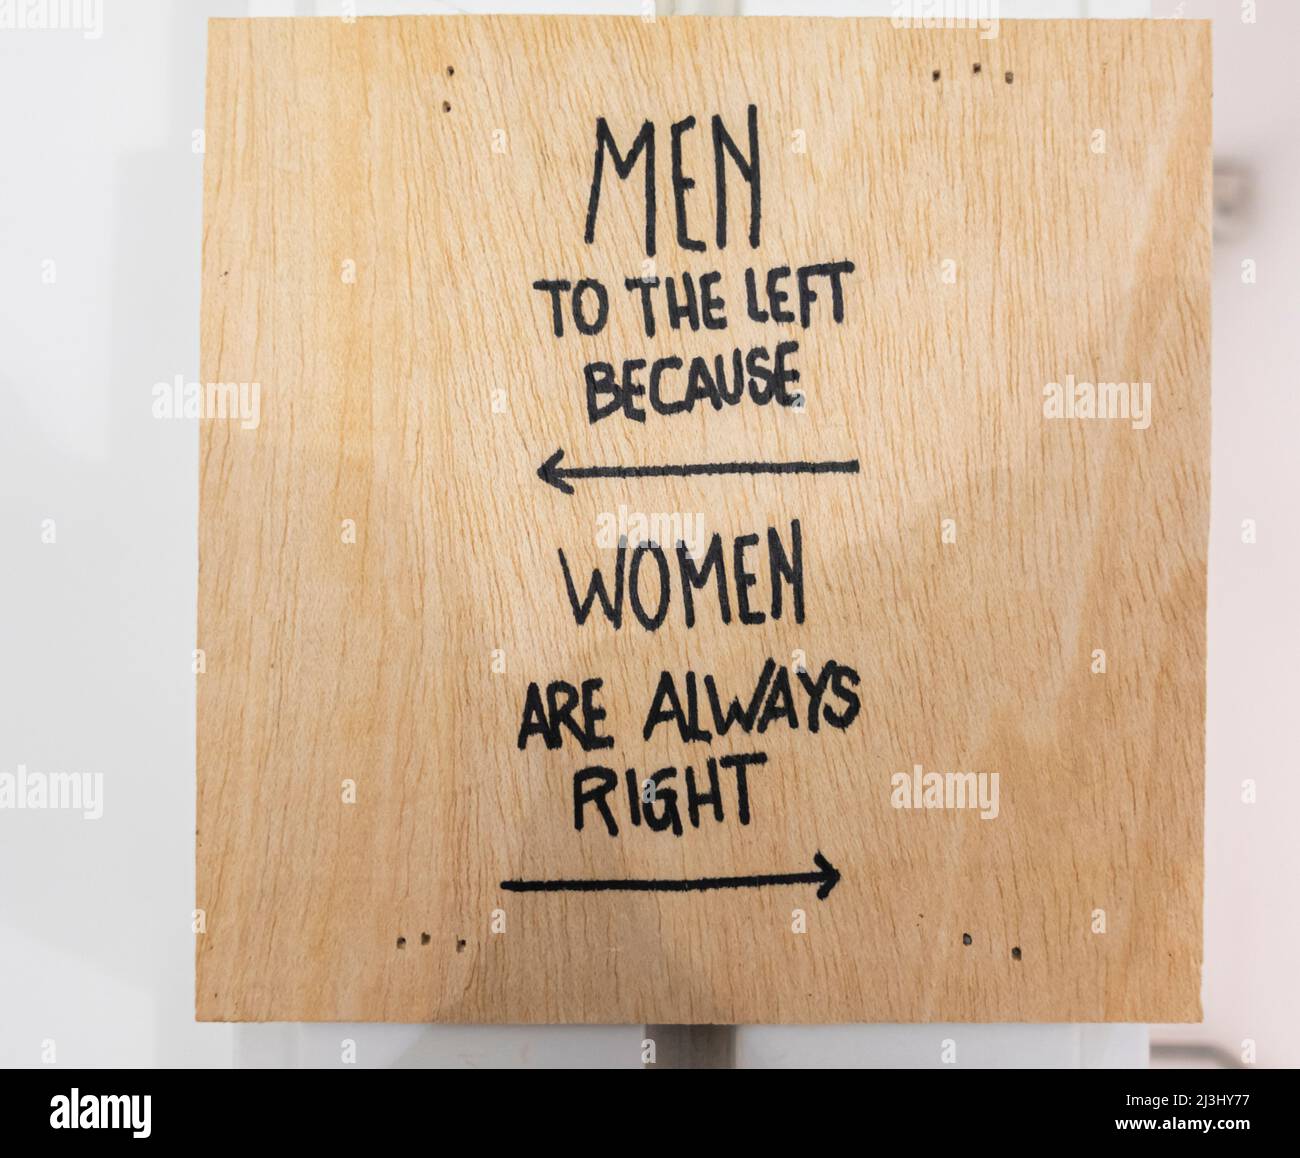 Männer nach links, weil Frauen immer Recht haben. WC Toilette Badezimmer Wegweiser. Stockfoto